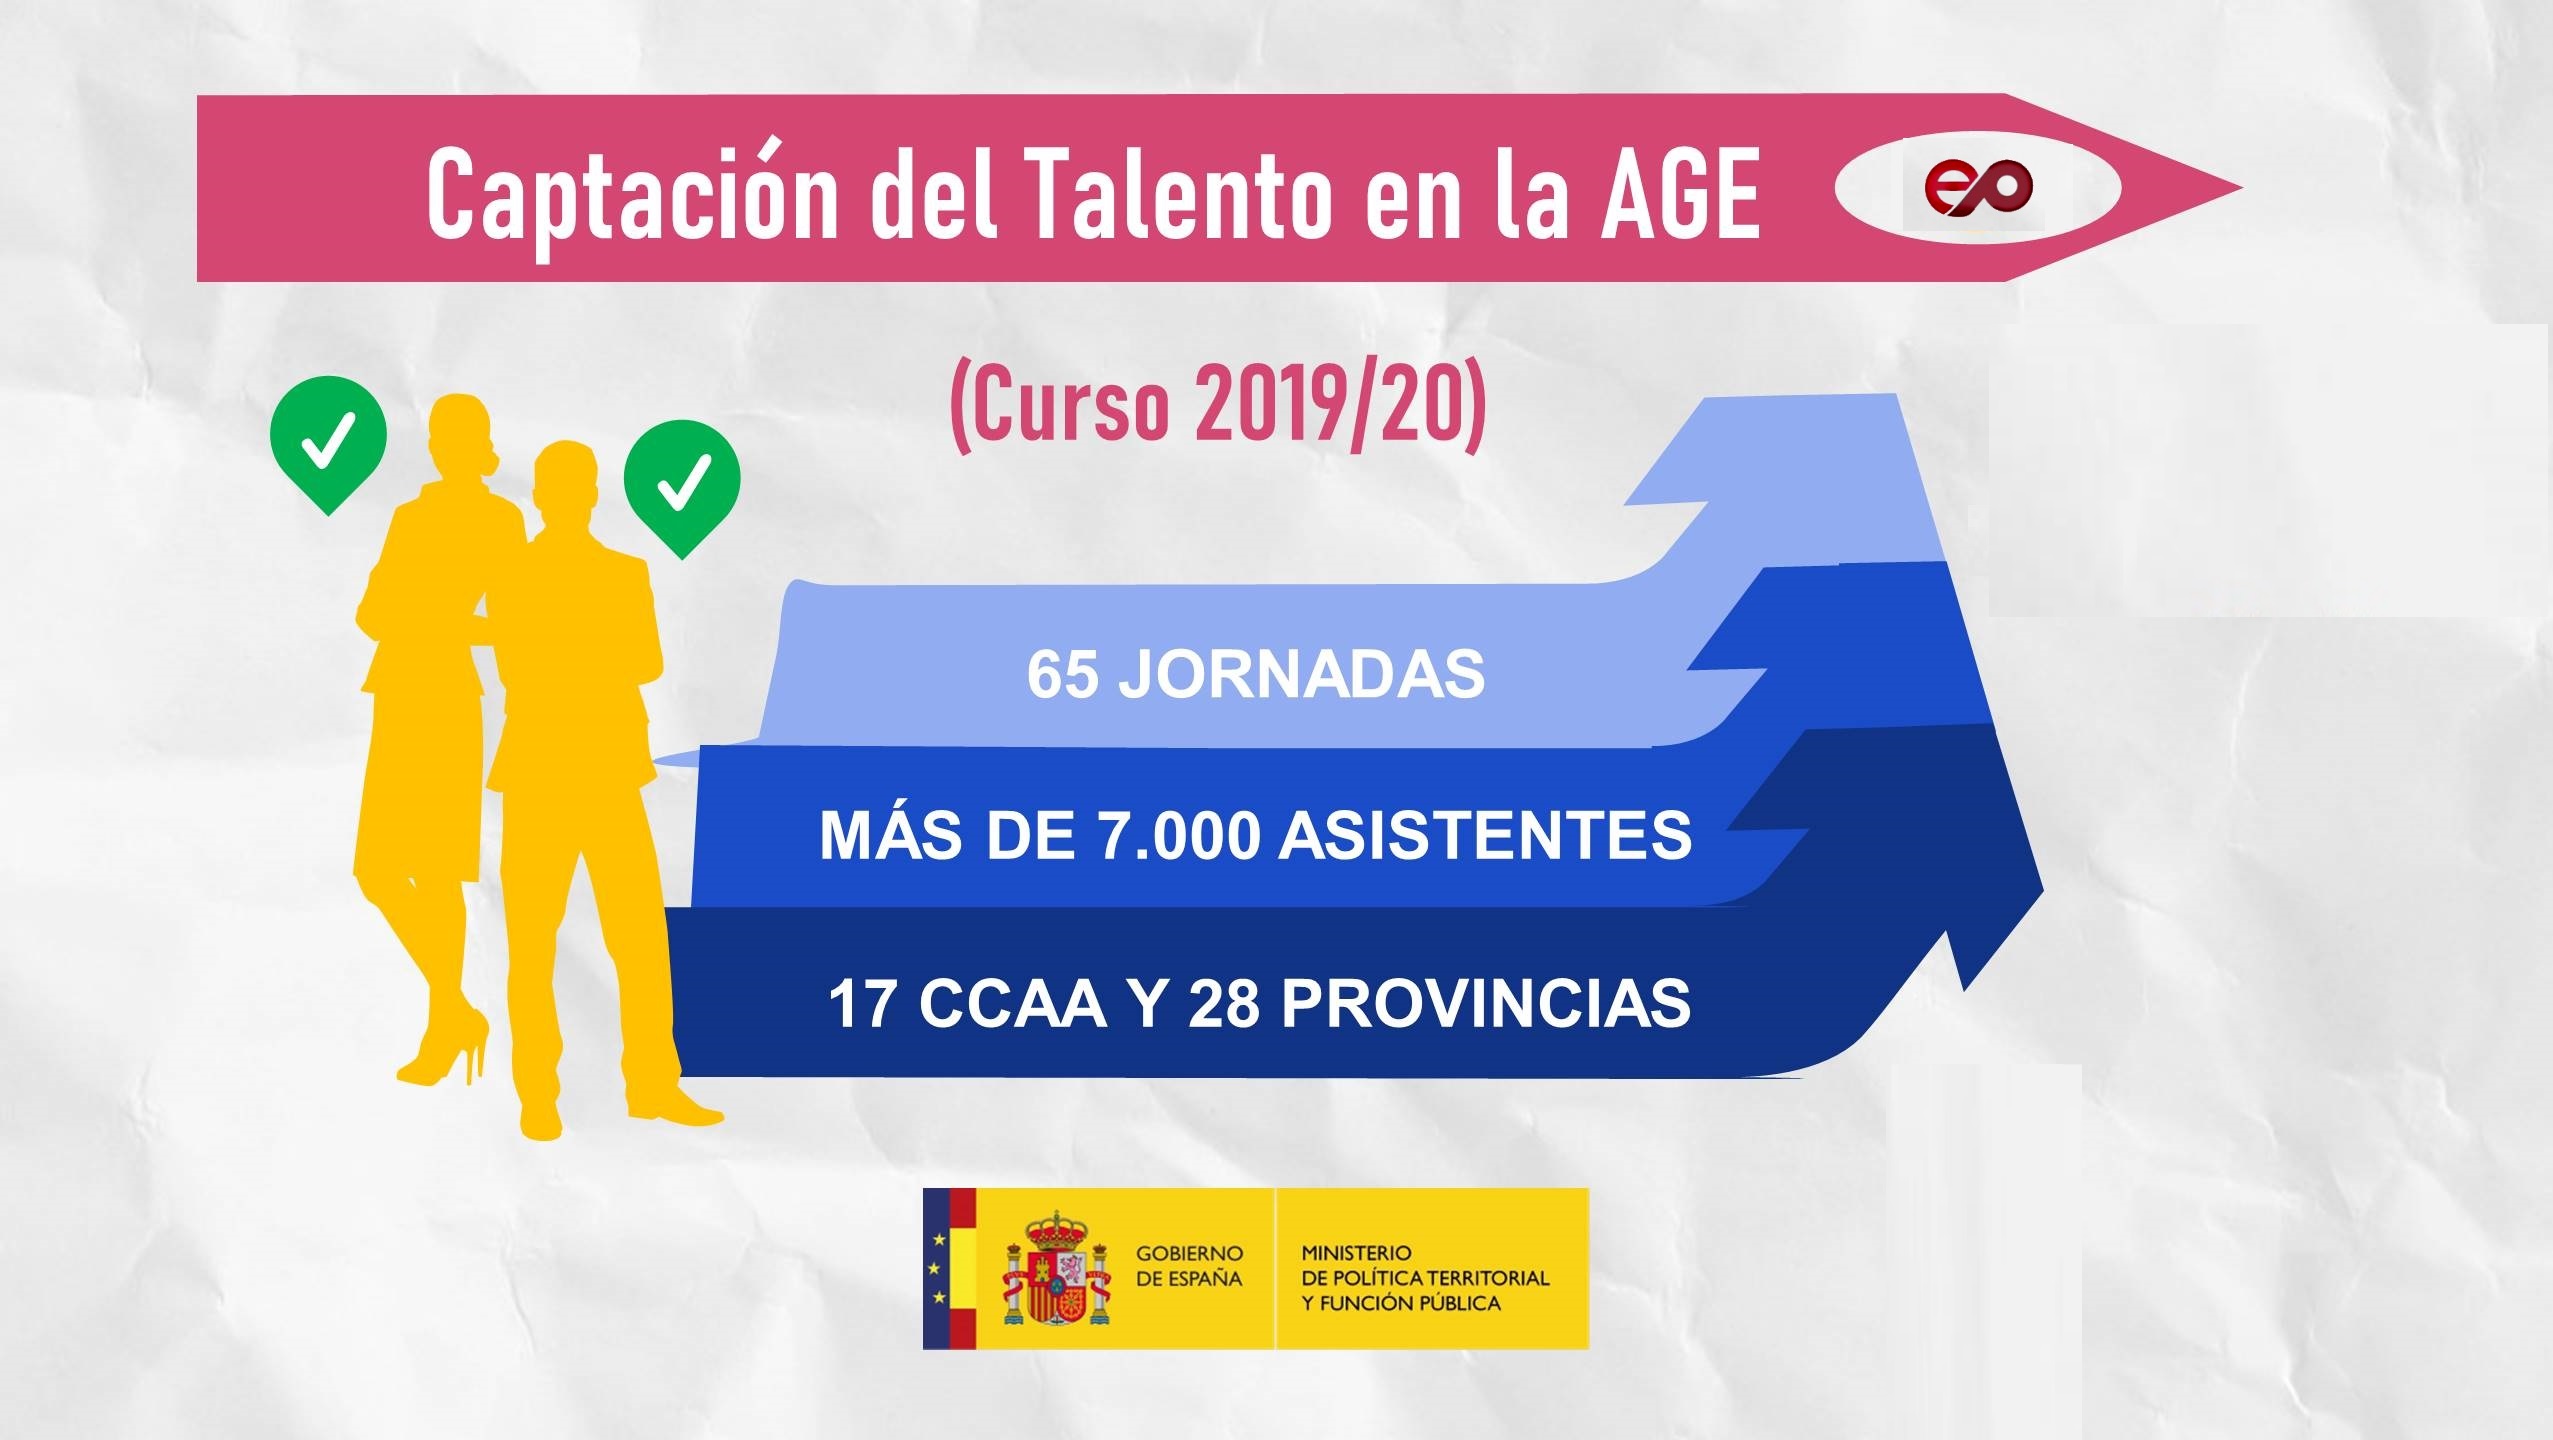 El programa ‘Captación del Talento’ de la Administración Pública supera los 7.000 participantes durante el curso 2019/2020 